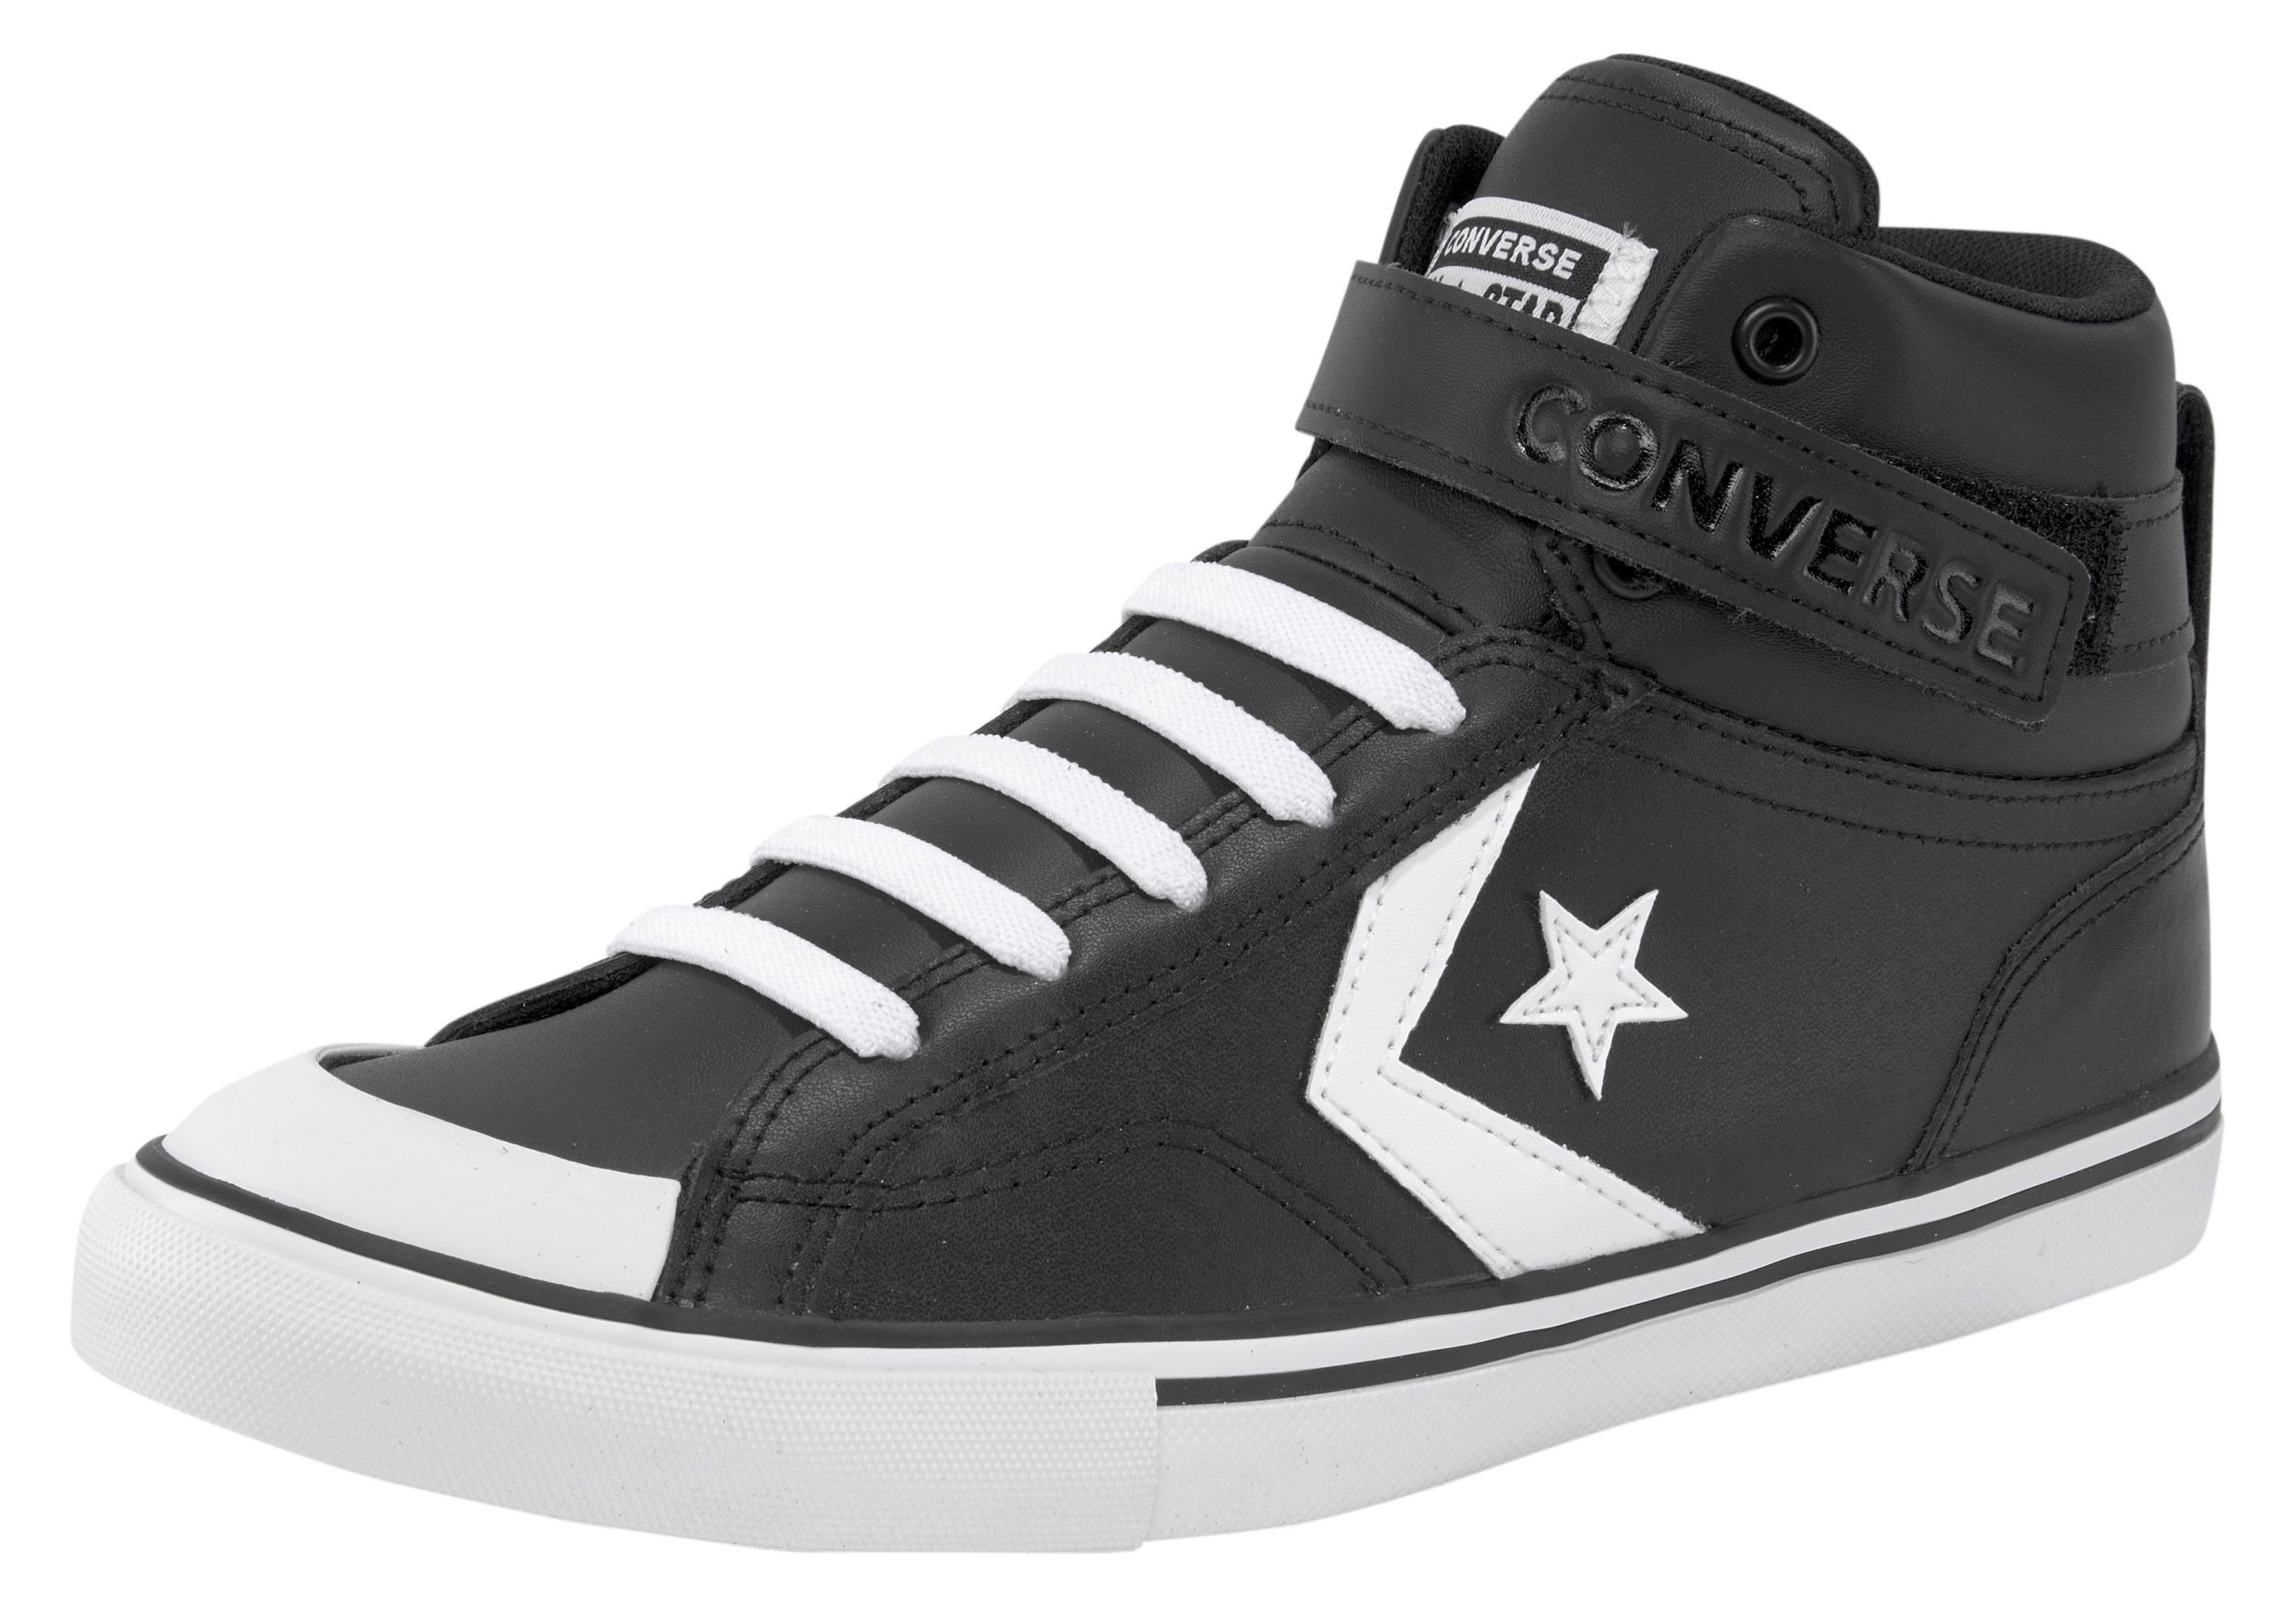 Preisermäßigung BLAZE schwarz-weiß Sneaker STRAP PRO Converse LEATHER